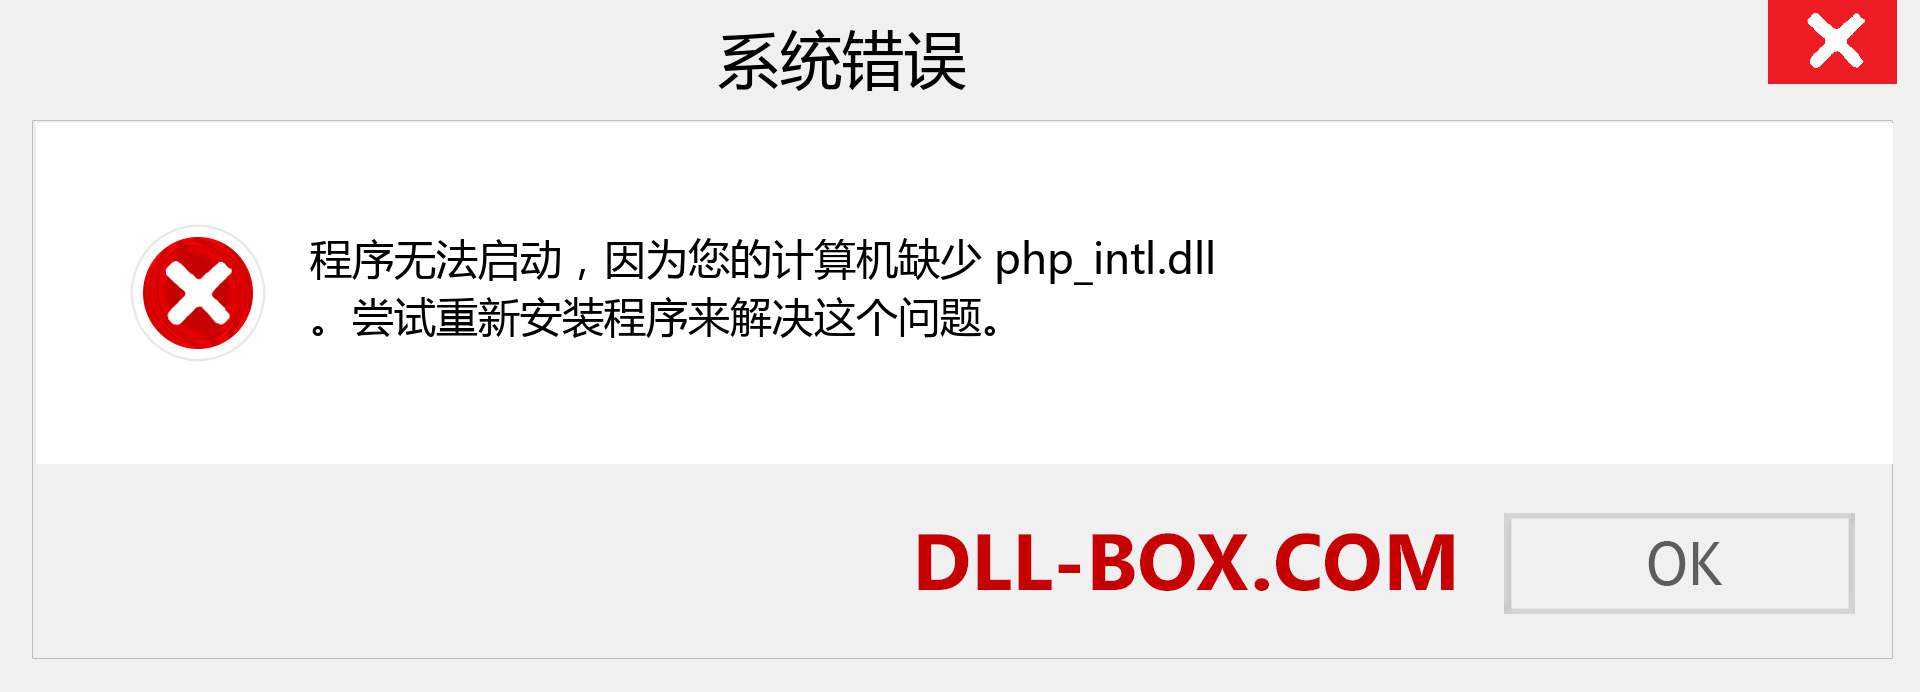 php_intl.dll 文件丢失？。 适用于 Windows 7、8、10 的下载 - 修复 Windows、照片、图像上的 php_intl dll 丢失错误